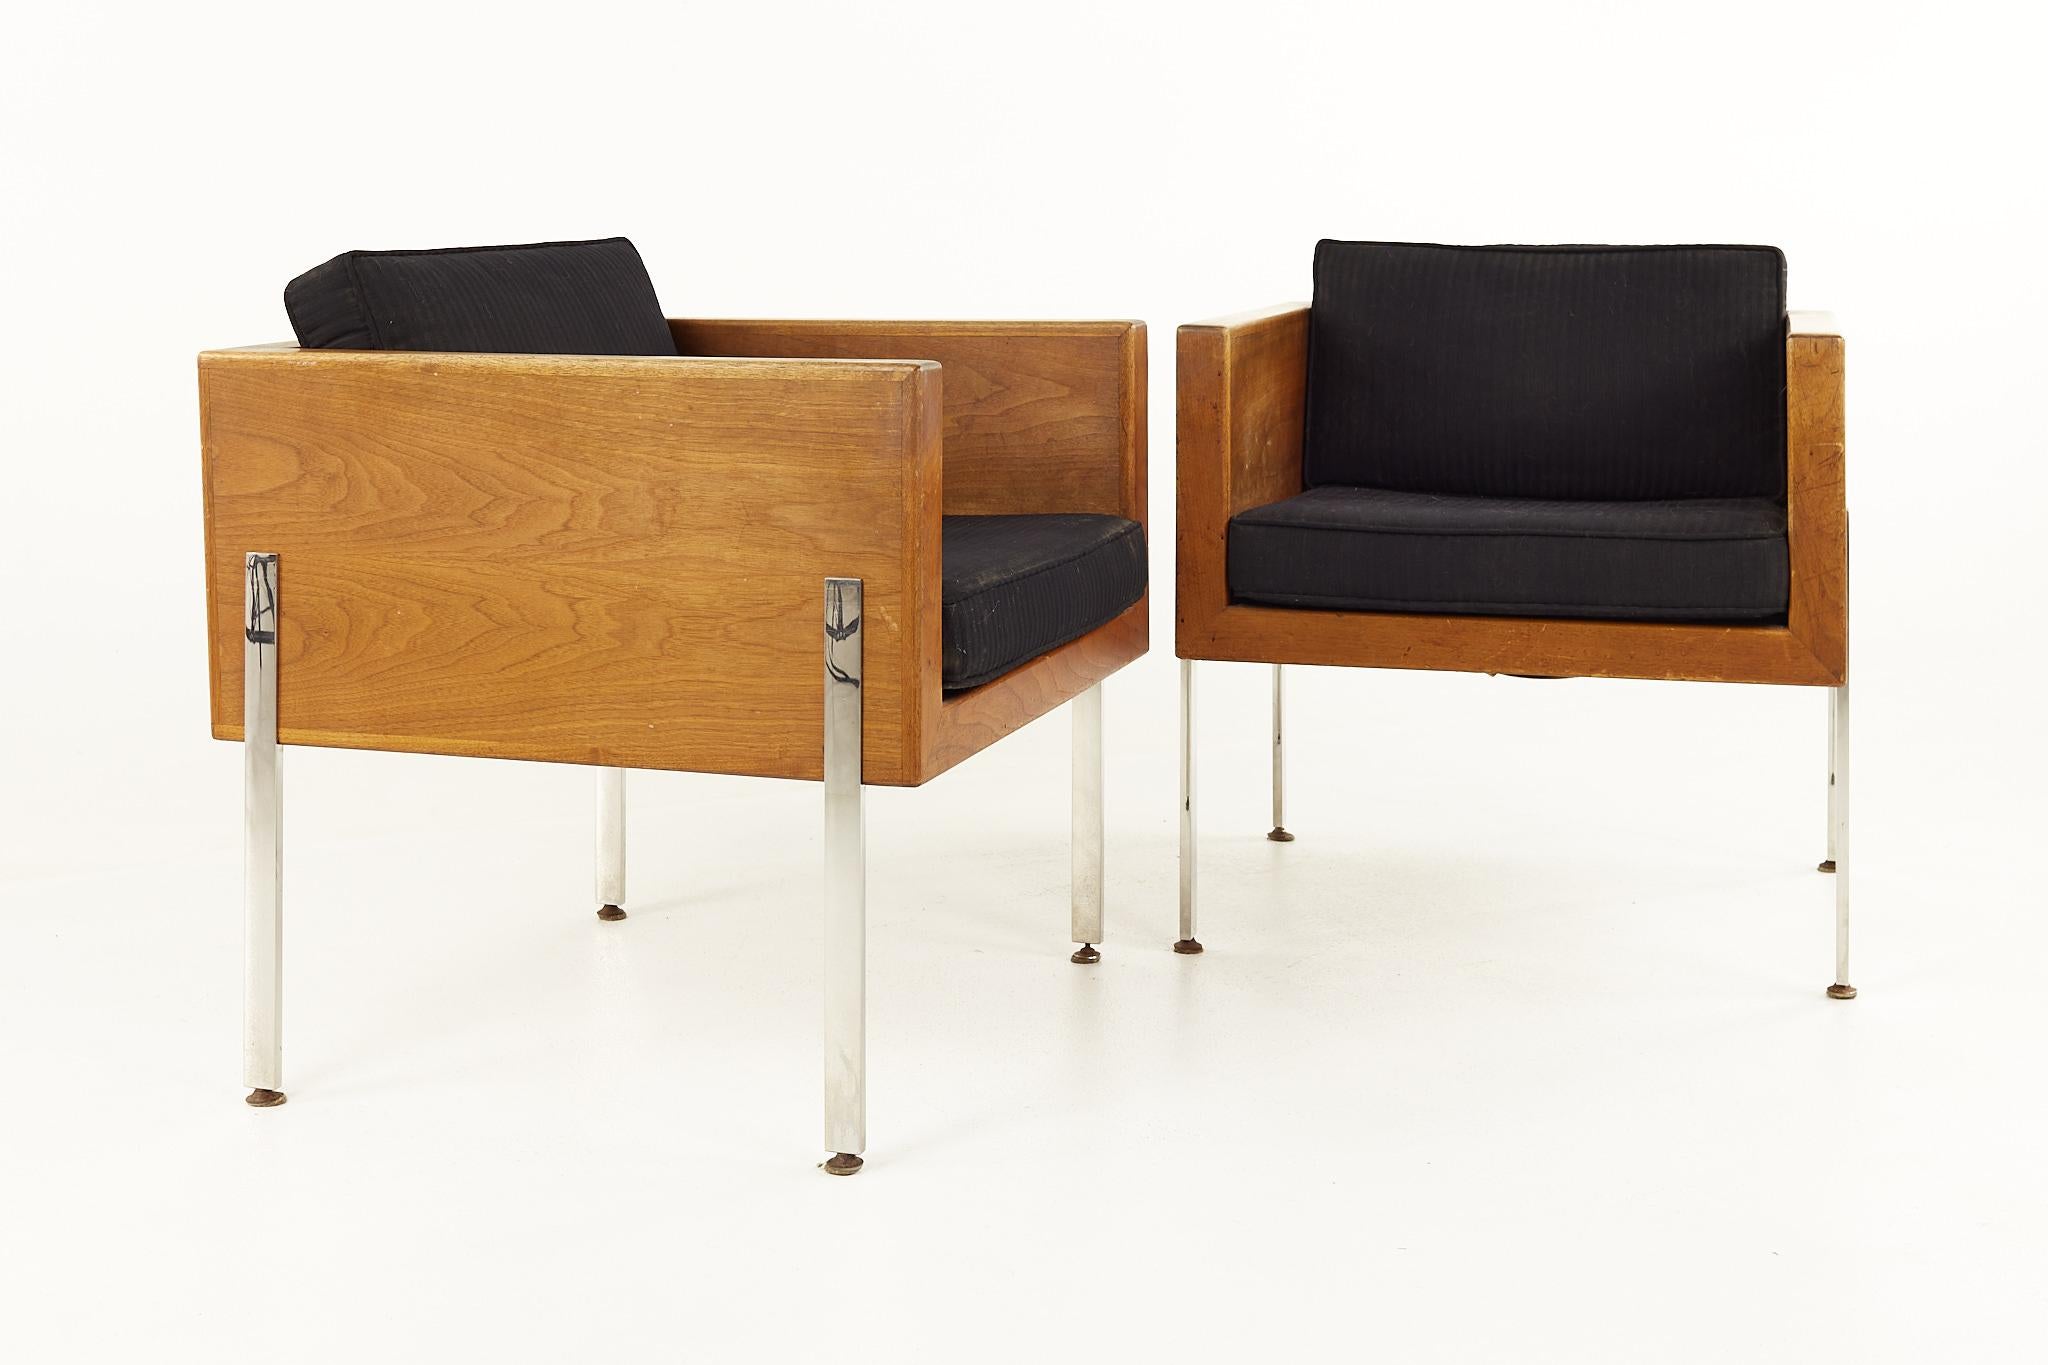 Harvey Probber Mid Century Lounge Stühle - Paar

Dieser Stuhl misst: 26 breit x 26 tief x 29 Zoll hoch, mit einer Sitzhöhe von 18 und Armhöhe von 25,25 Zoll

Alle Möbelstücke sind in einem so genannten restaurierten Vintage-Zustand zu haben. Das